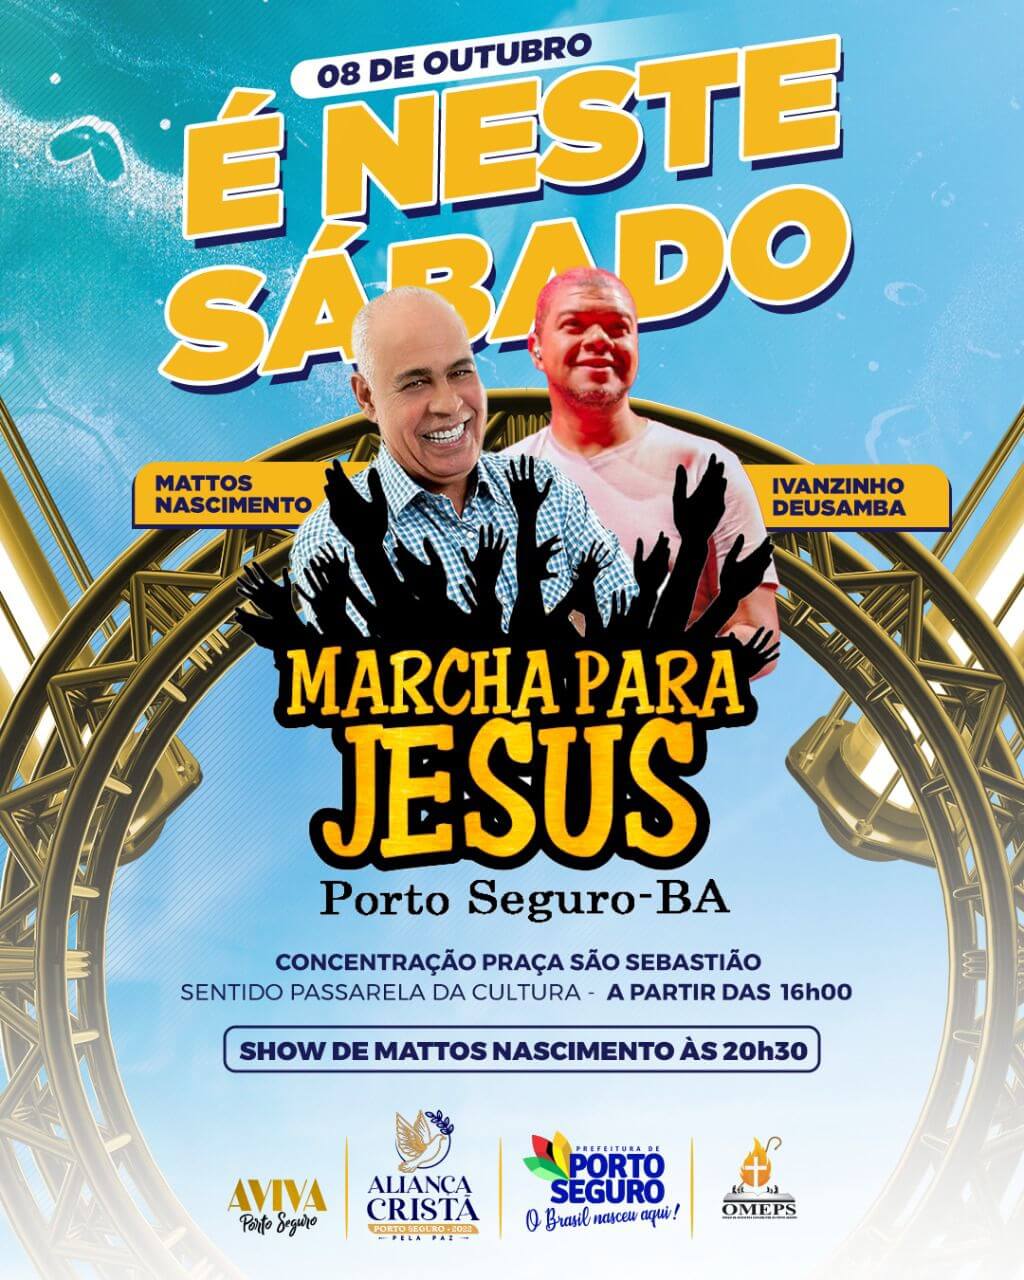 Marcha para Jesus Porto Seguro 19